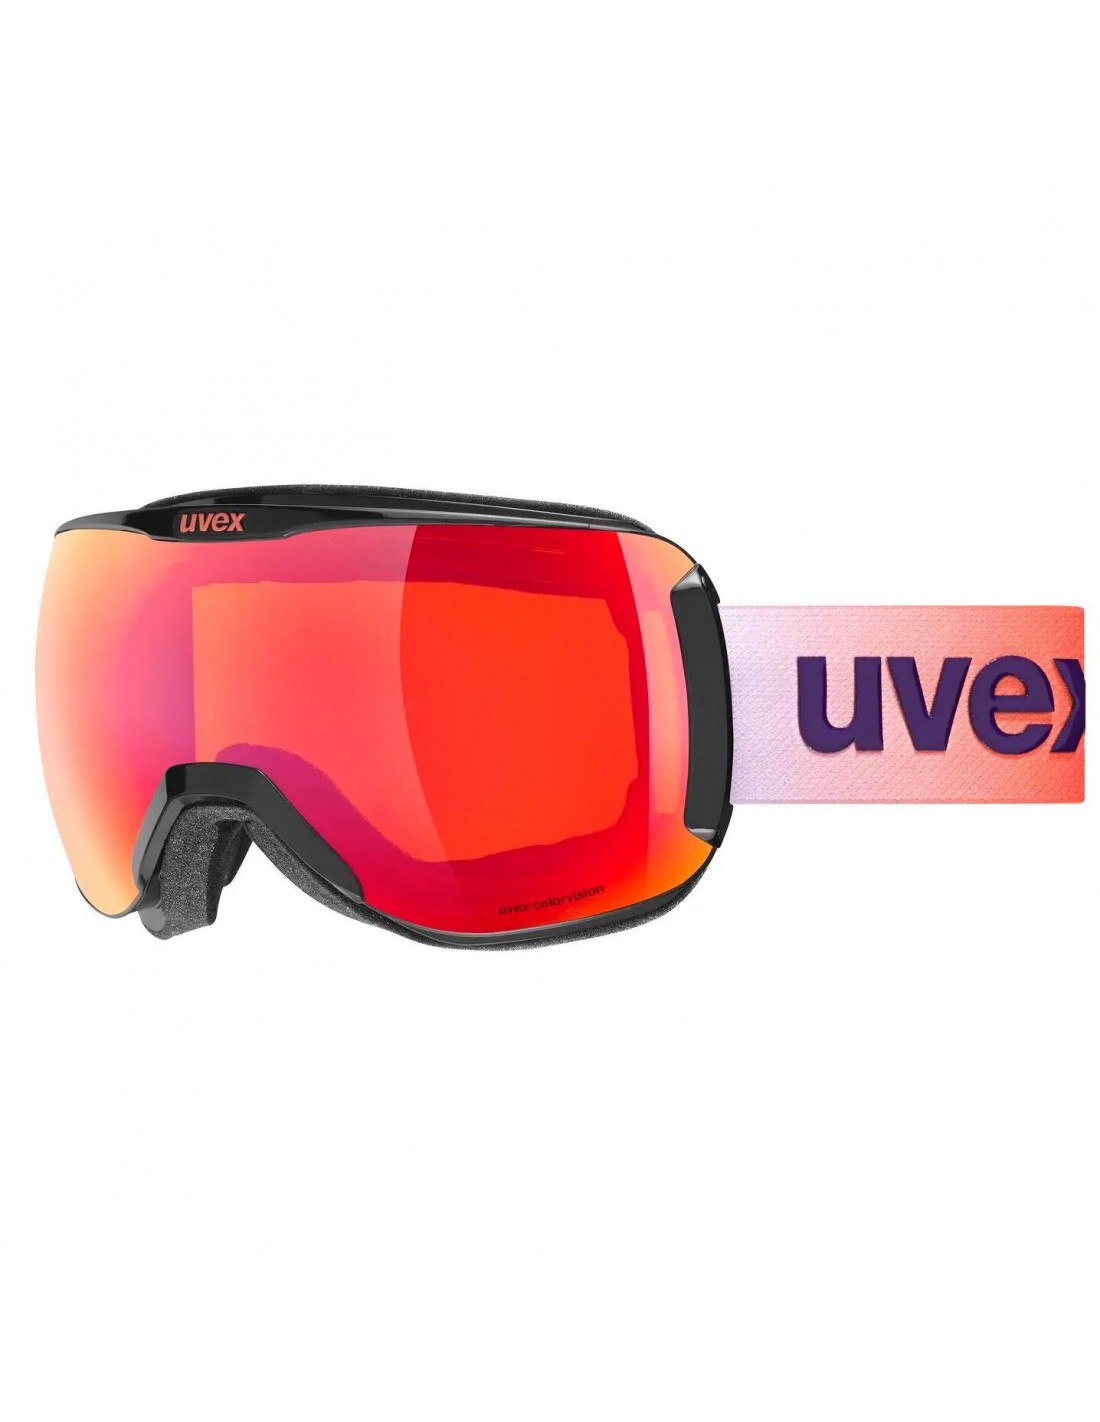 Uvex Skibrille Downhill 2100 CV, black, mirror scarlet S2 colorvision orange von Uvex